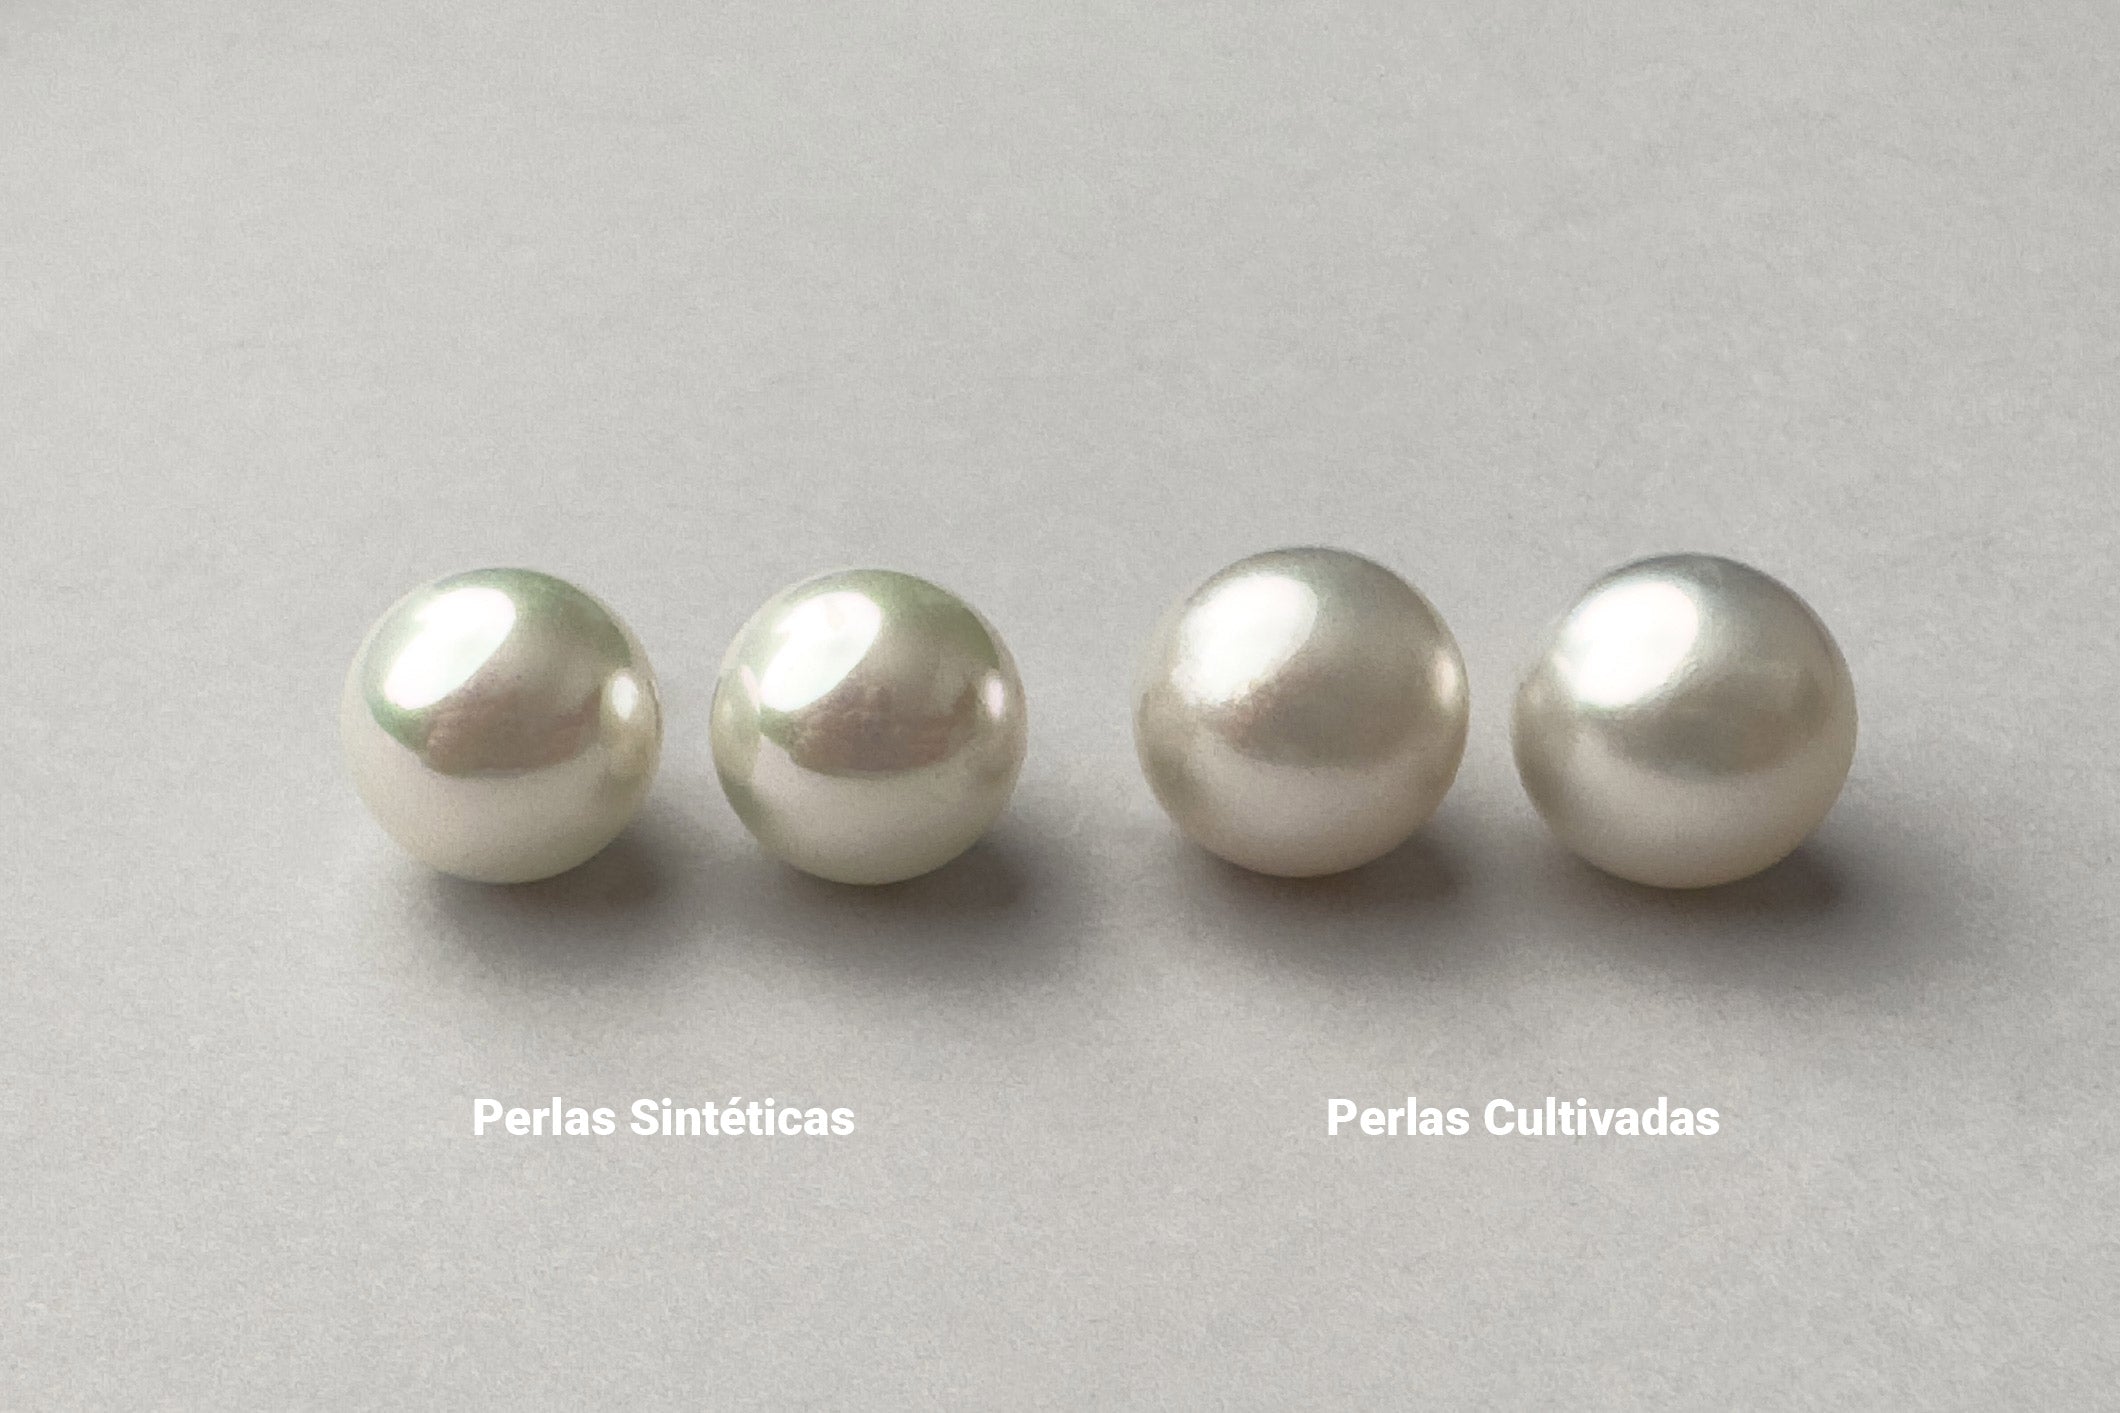 Imagen comparativa entre perlas sintéticas y cultivadas